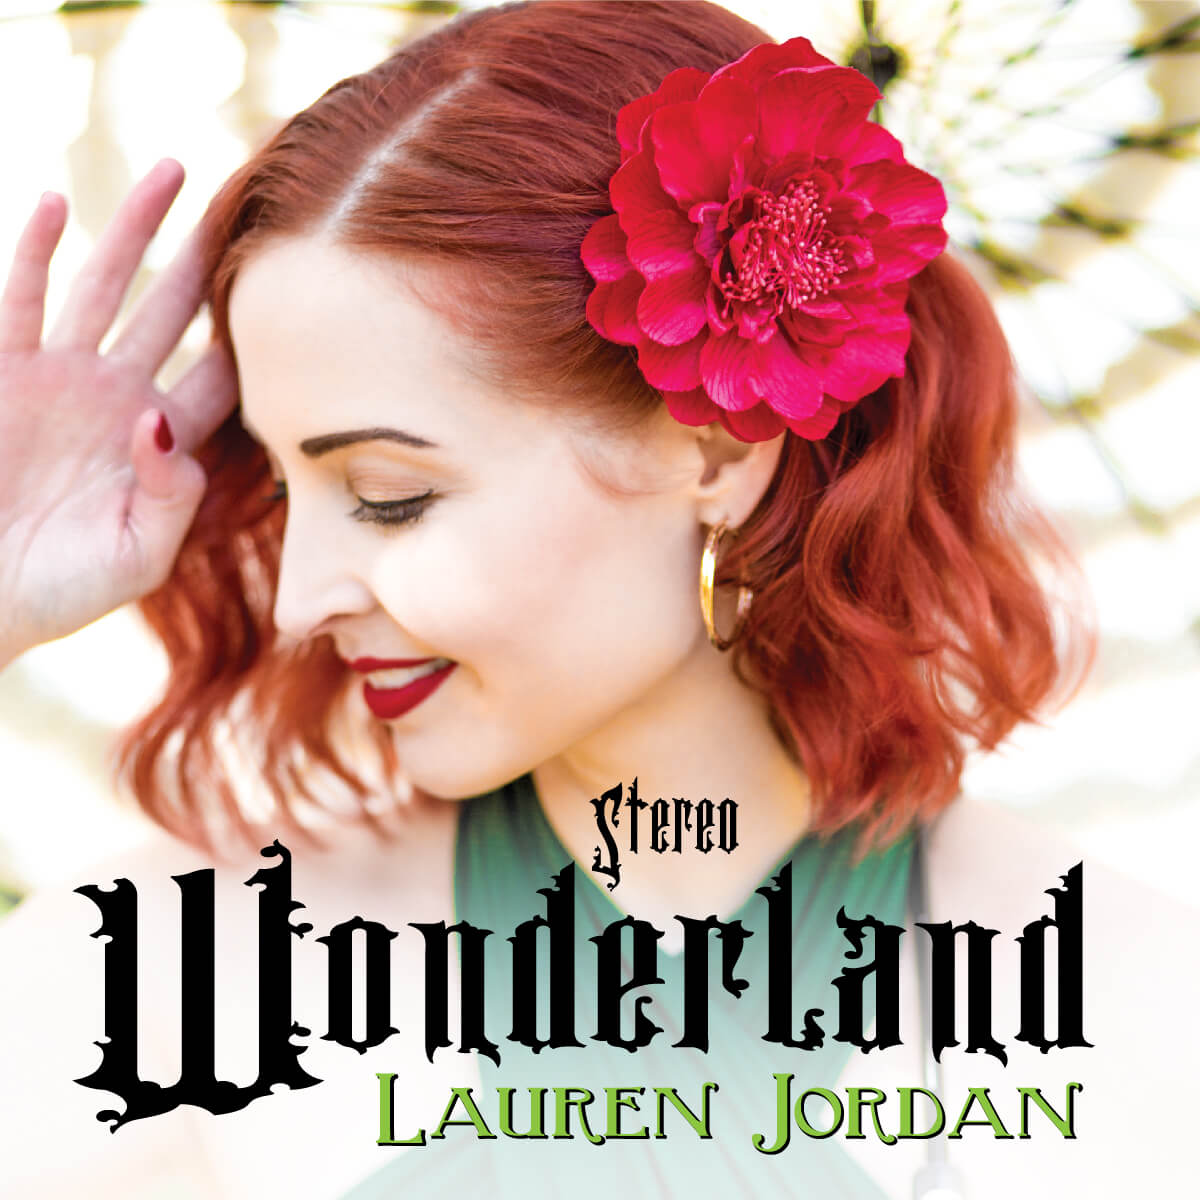 Lauren Jordan - Stereo Wonderland - Cover Front